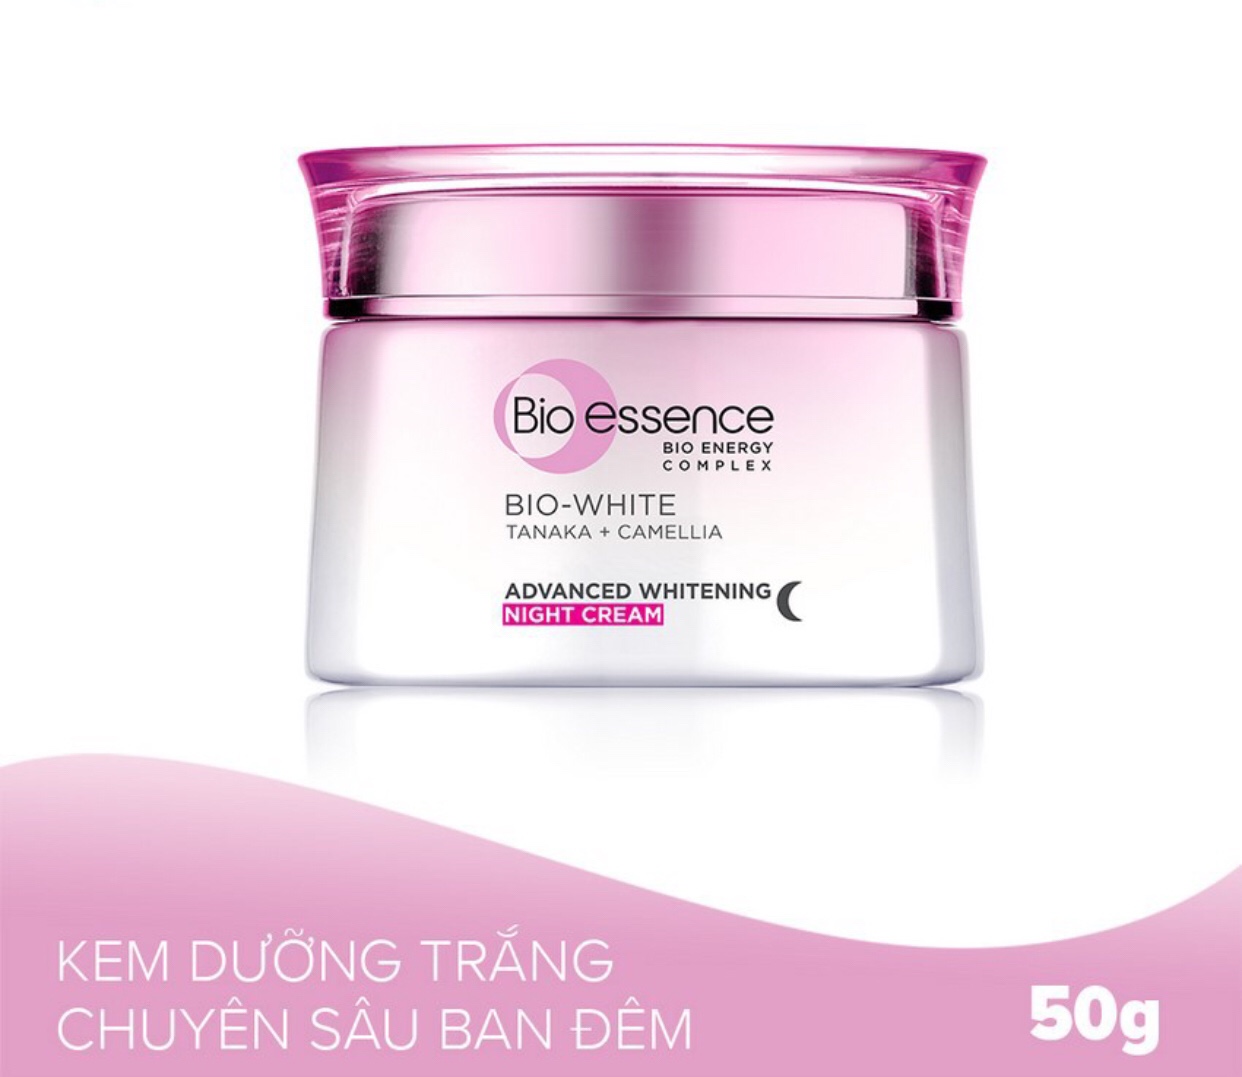 Bộ Dưỡng Trắng Chuyên Sâu Bio-Essence Bio White Advanced Whitening: Sữa rửa mặt 100ml, kem dưỡng da ban đêm 50g, Nước cân bằng dưỡng trắng da 100ml +Tặng kèm 1 mặt nạ Bio-essence